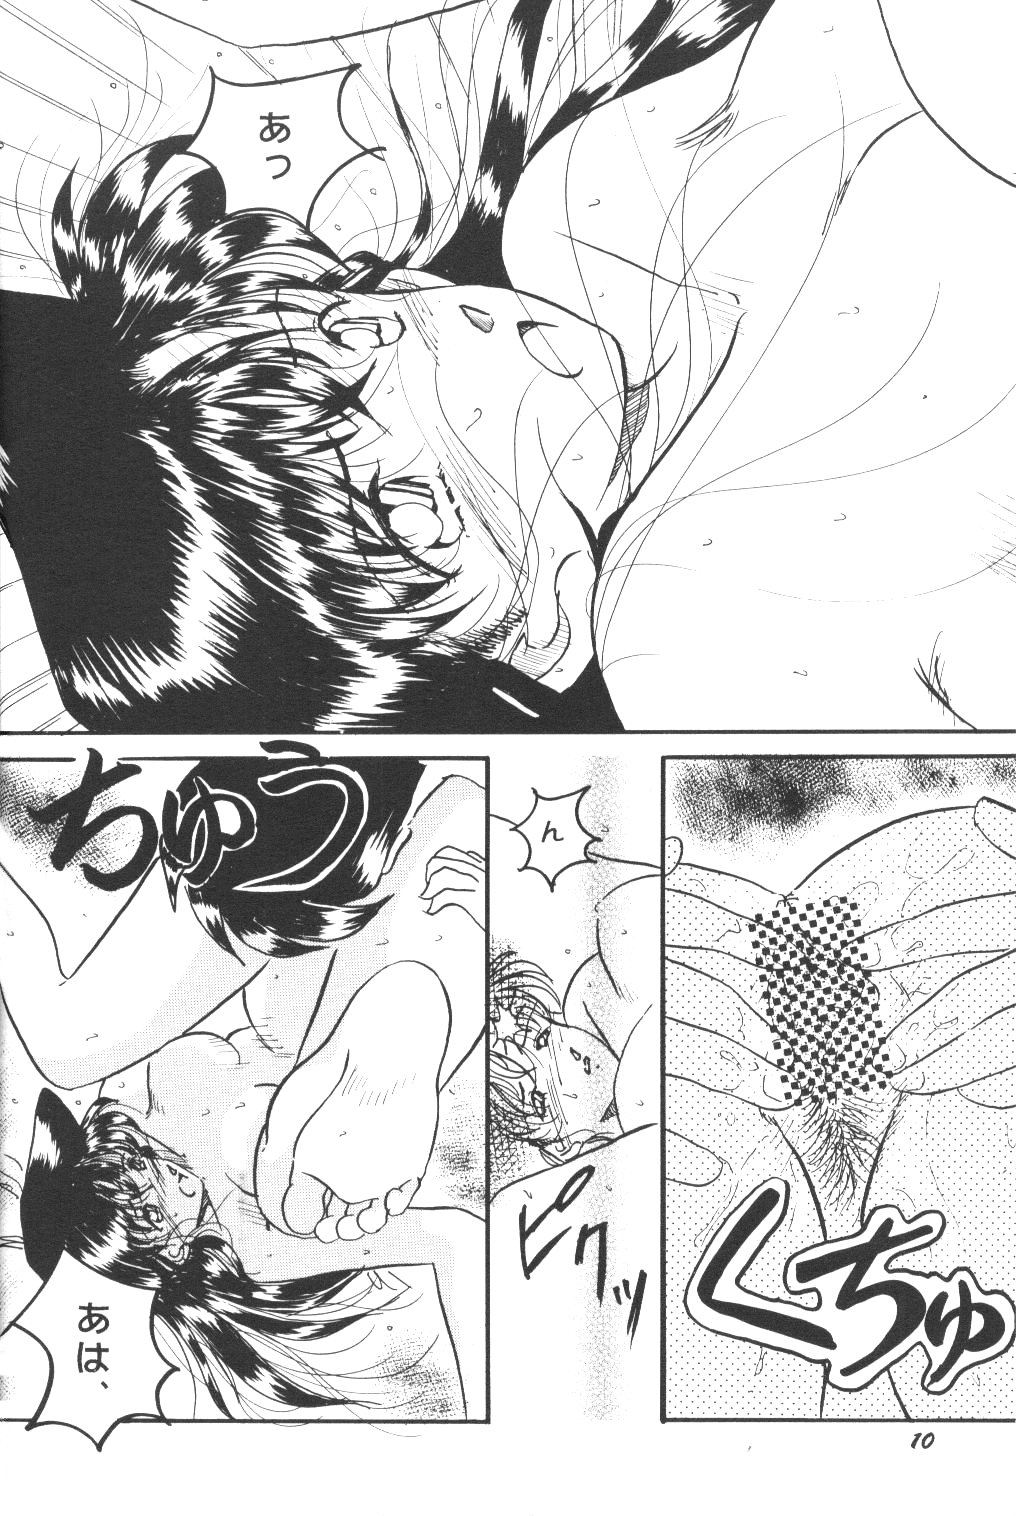 [Studio Boxer (Shima Takashi, Taka)] HOHETO 22 (Detective Conan) page 9 full